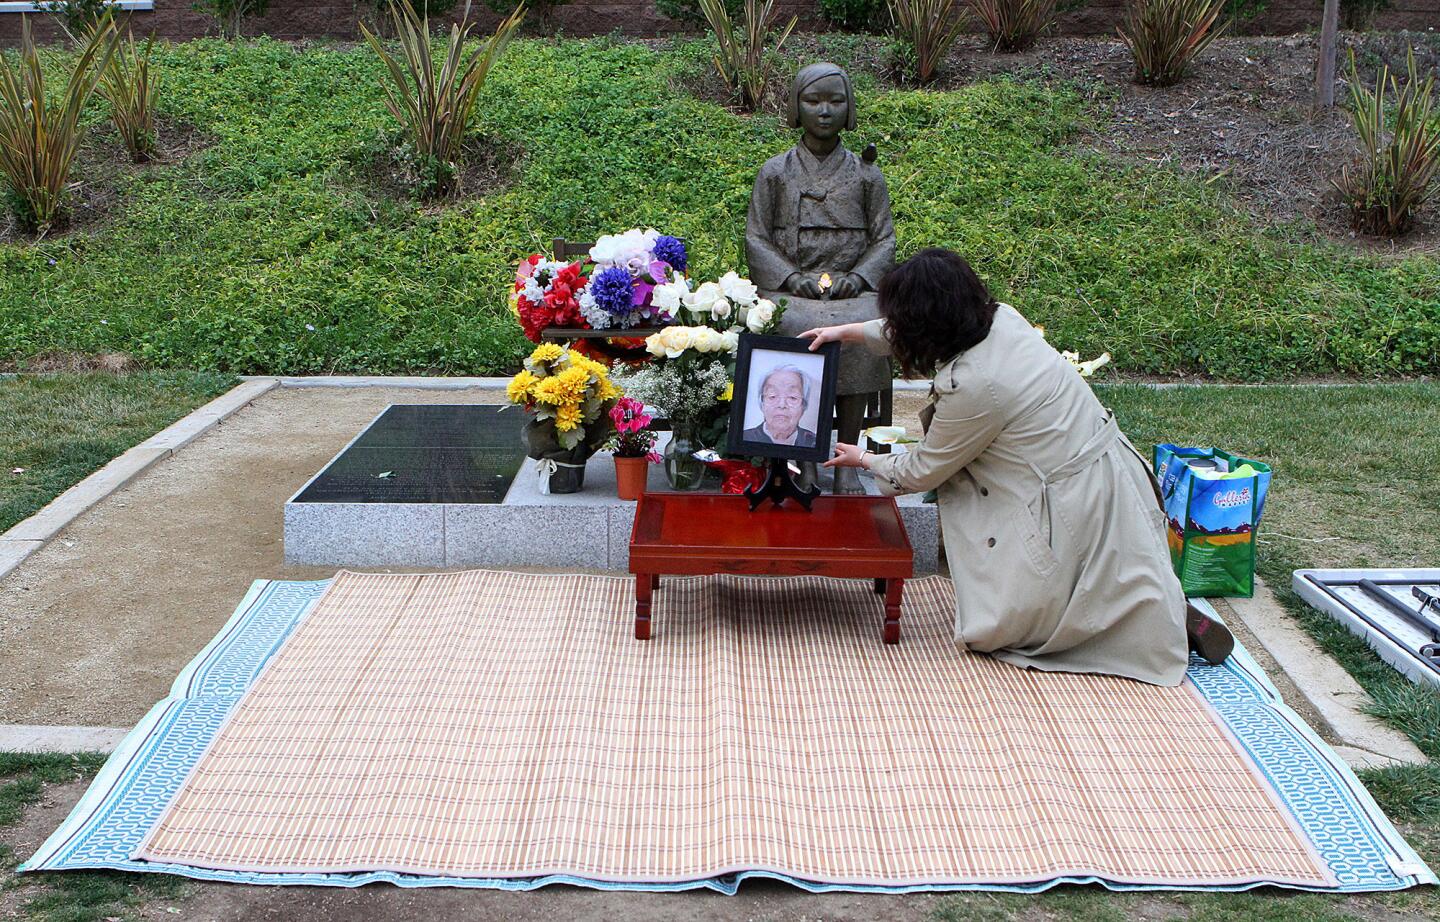 Photo Gallery: Comfort woman Keum Ja Hwang memorial at Comfort Women Statue